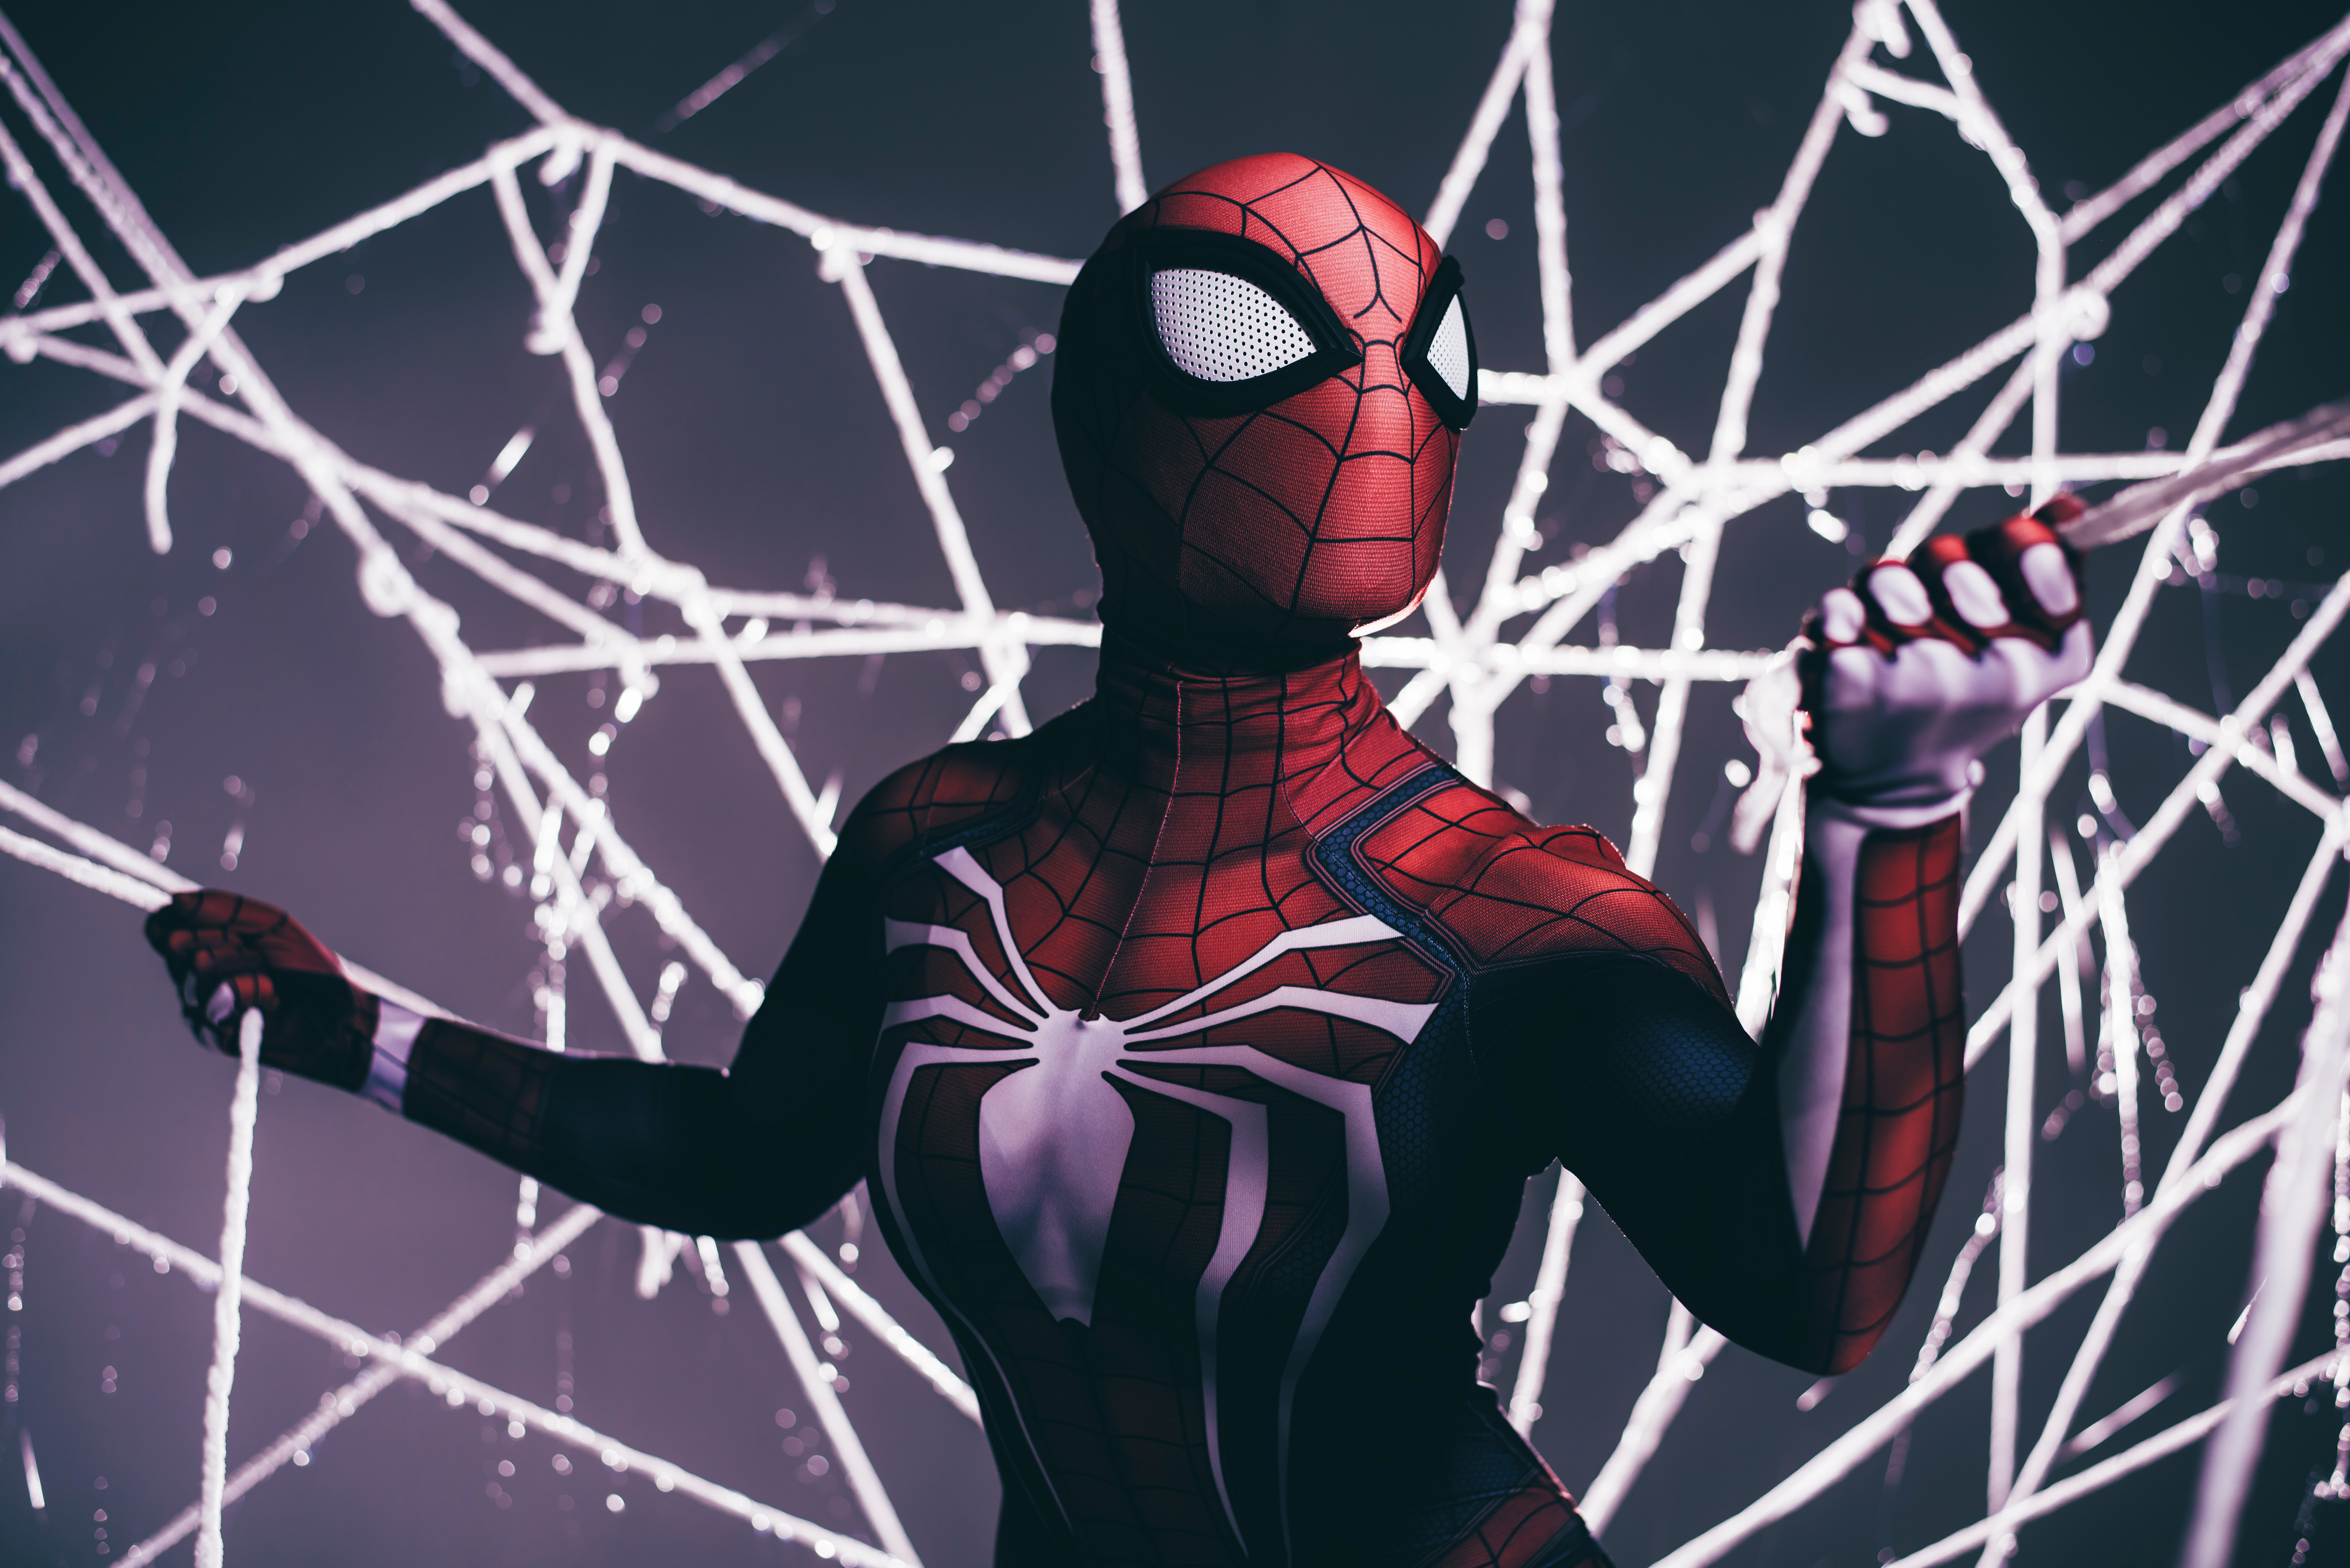  Spiderman Shooting Web  HD Superheroes 4k Wallpapers 